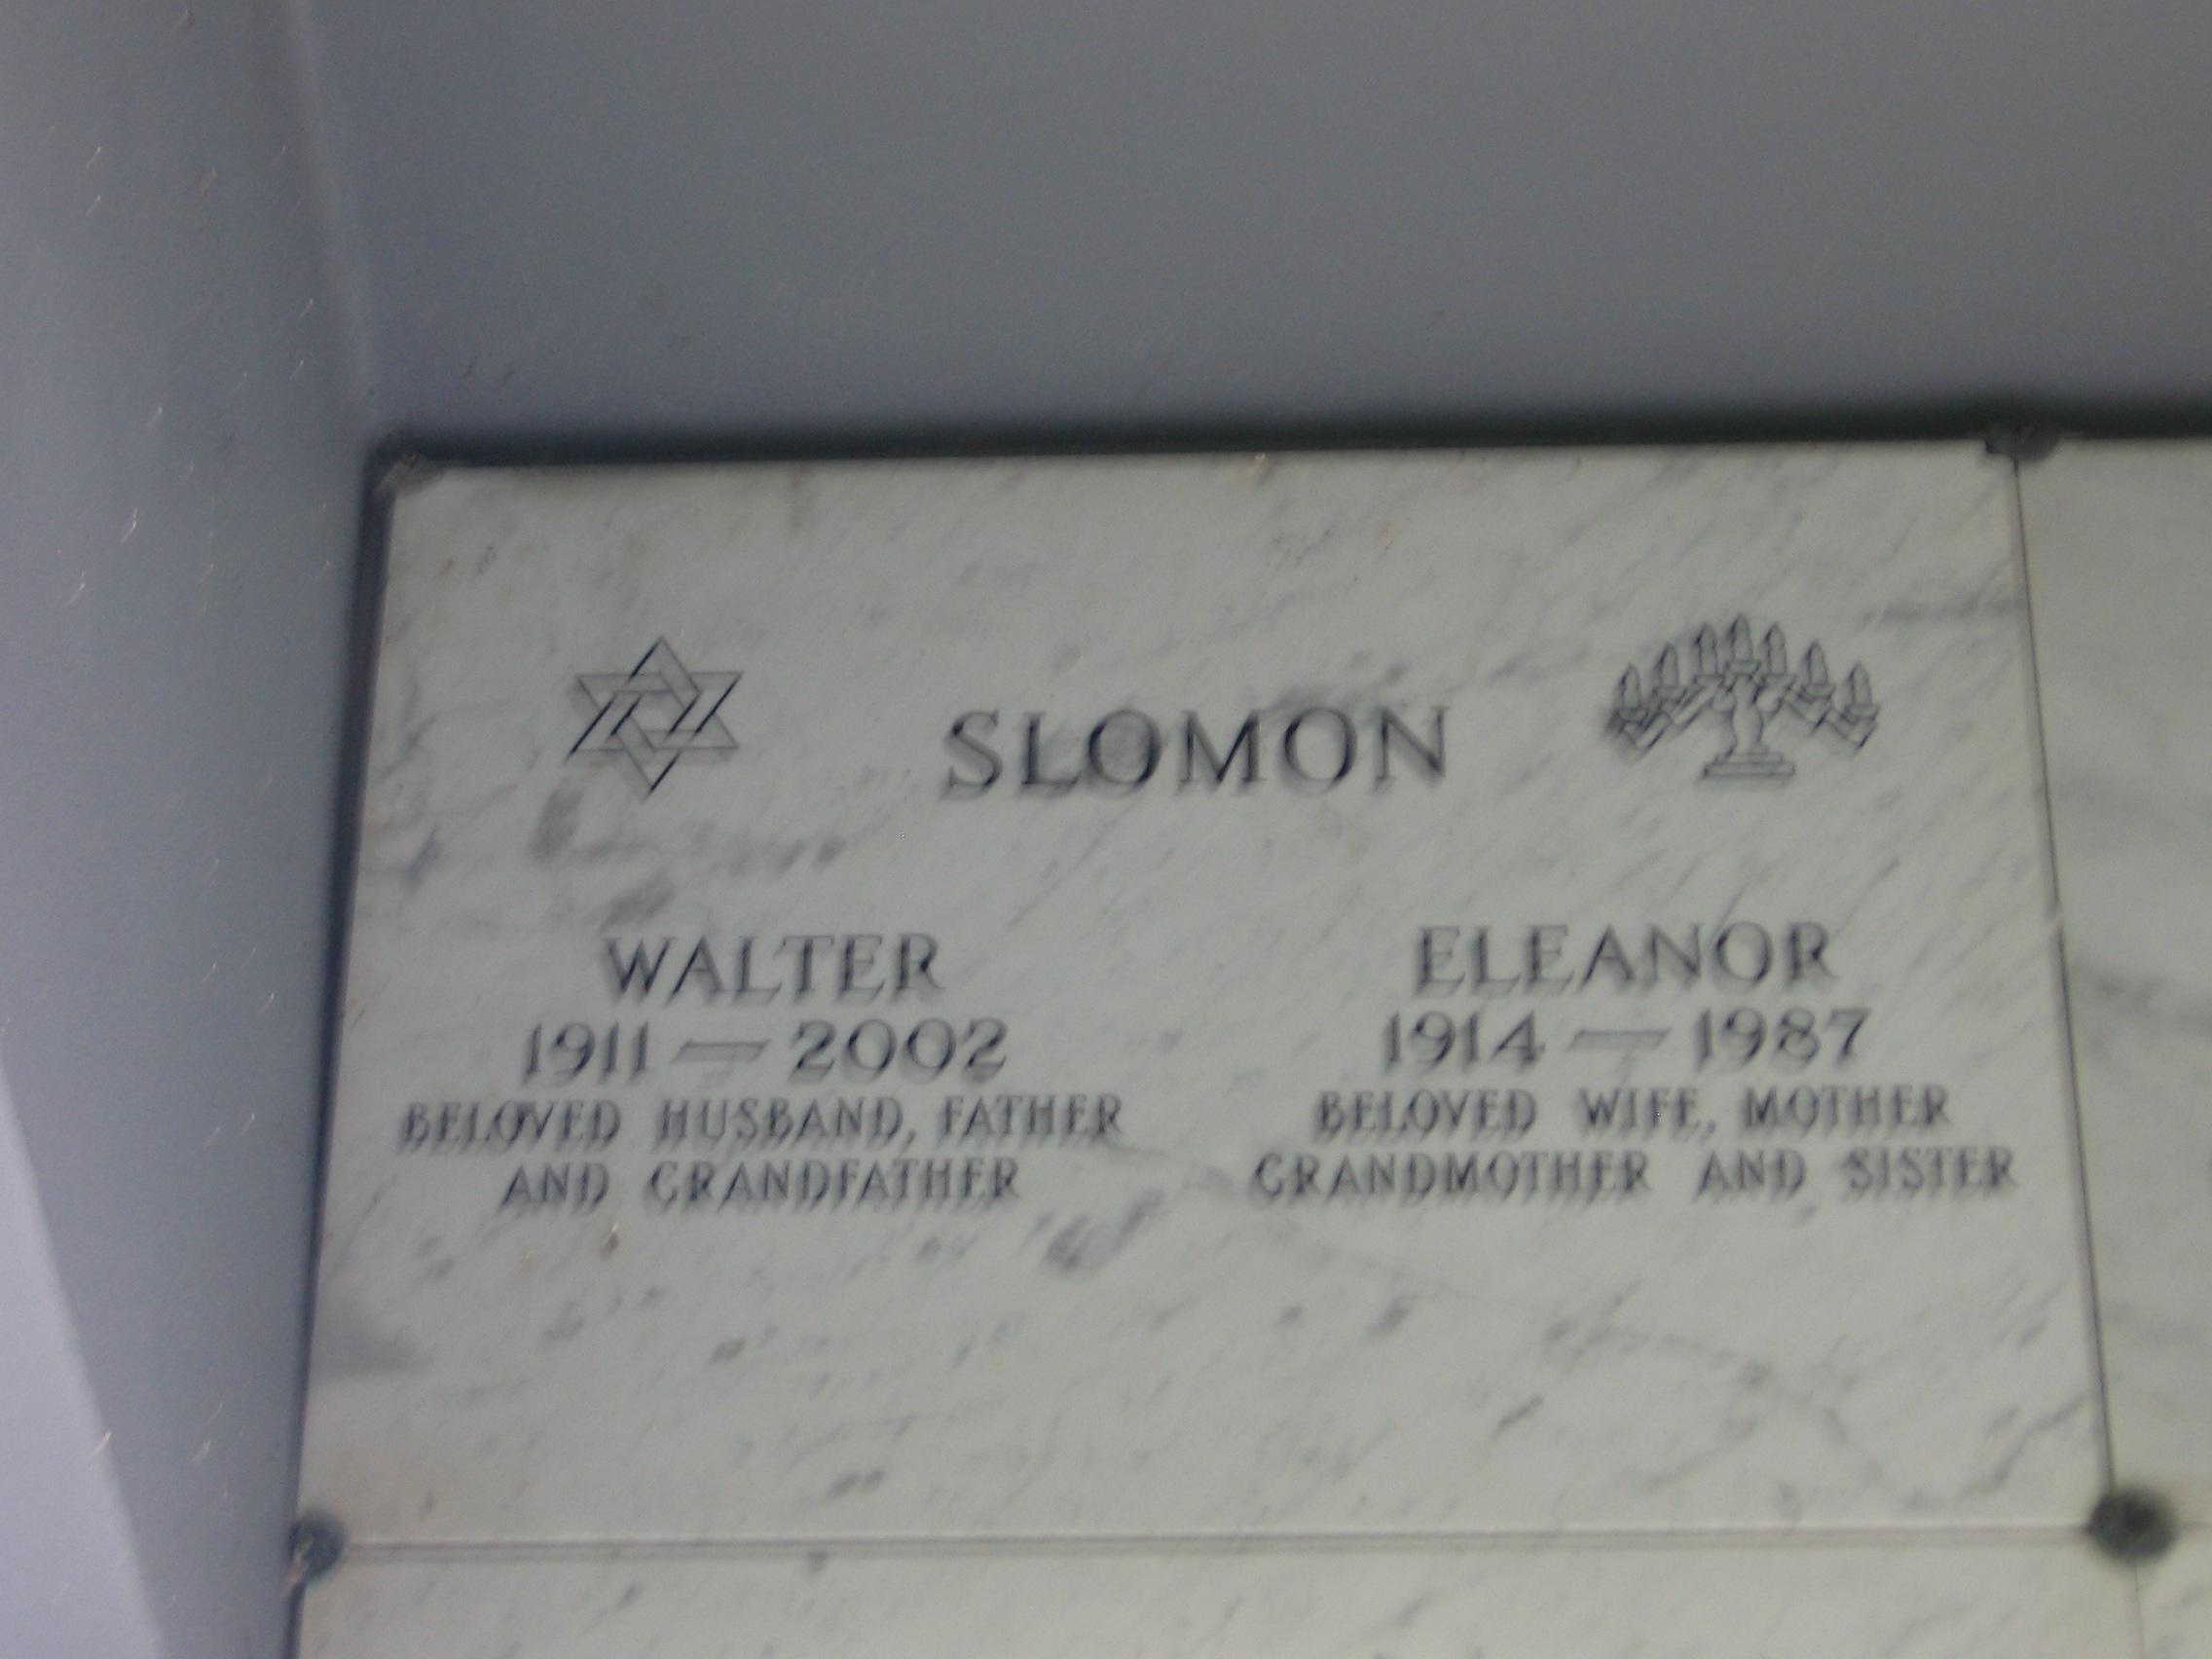 Walter Slomon